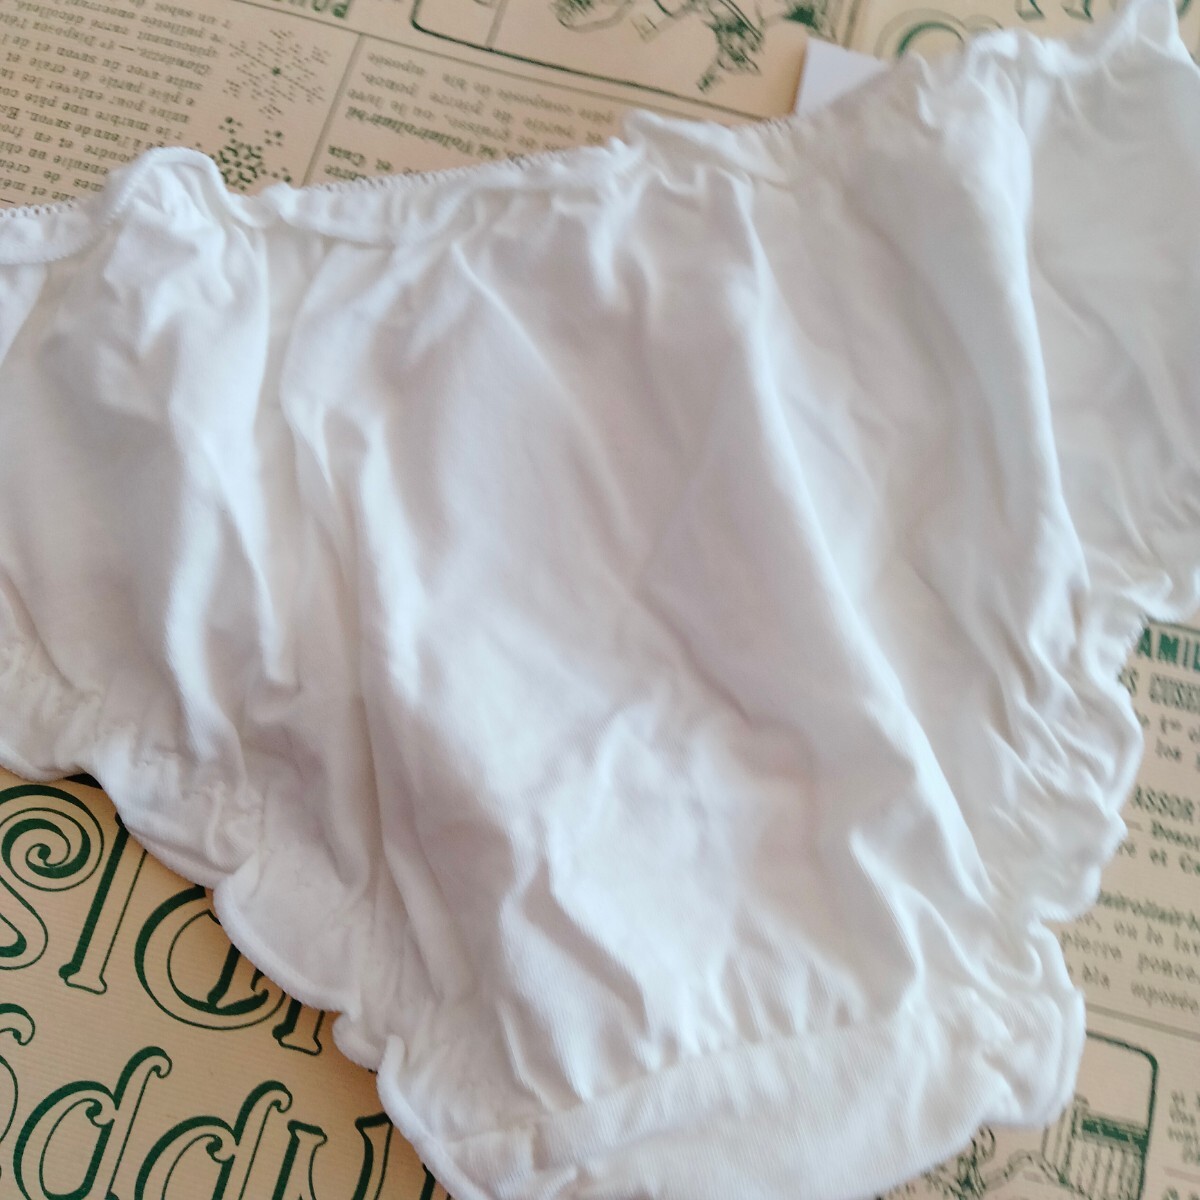 新品未使用 135-667-8 No.C-69 Mサイズ ホワイト綿系カジュアル映え キュート 可愛い パンツ パンティ ショーツ 下着の画像3